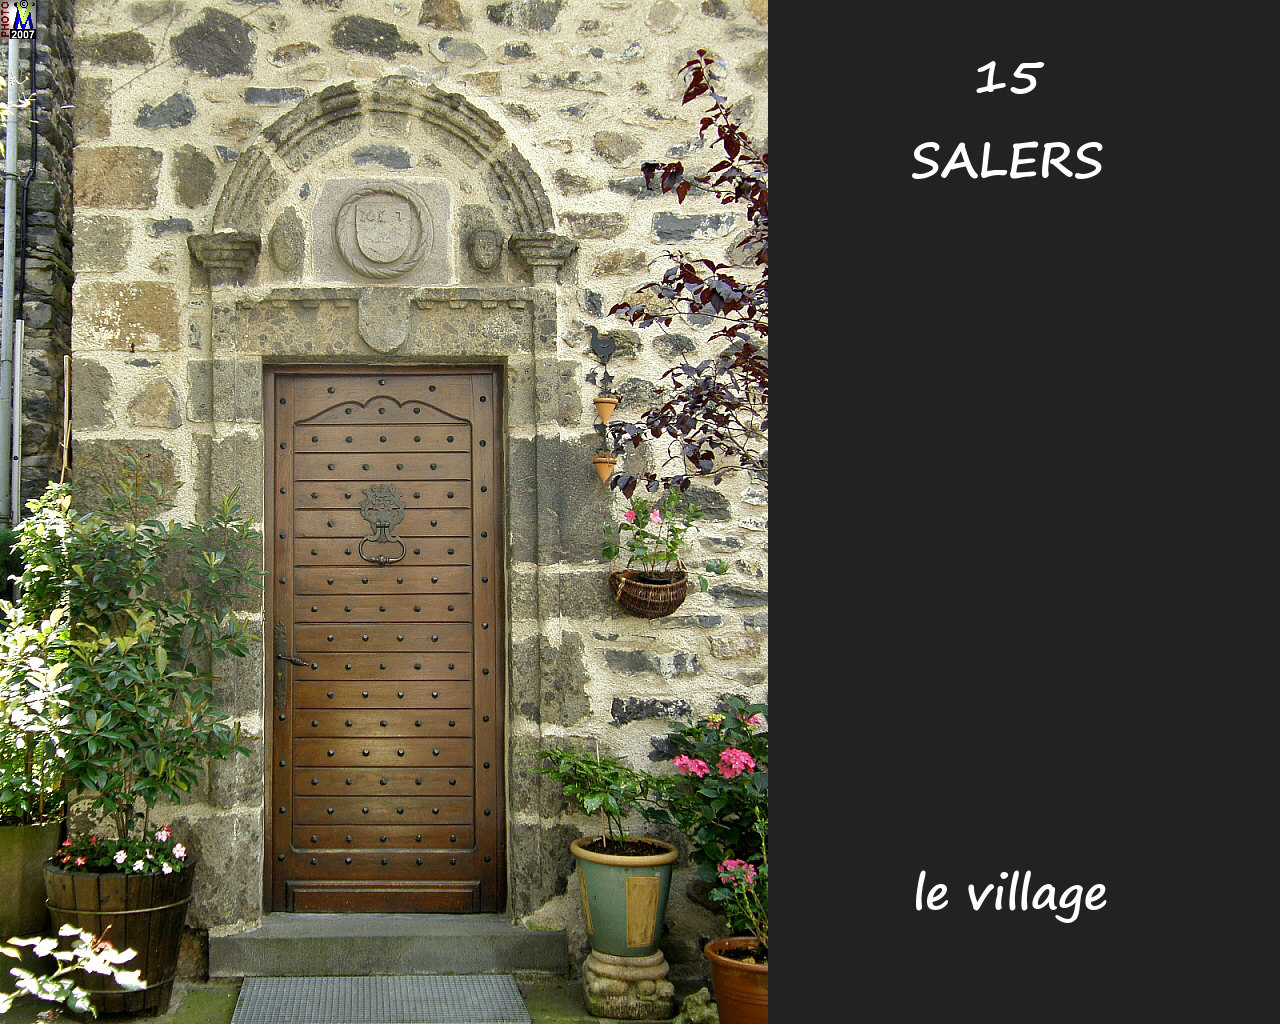 15SALERS_village_188.jpg